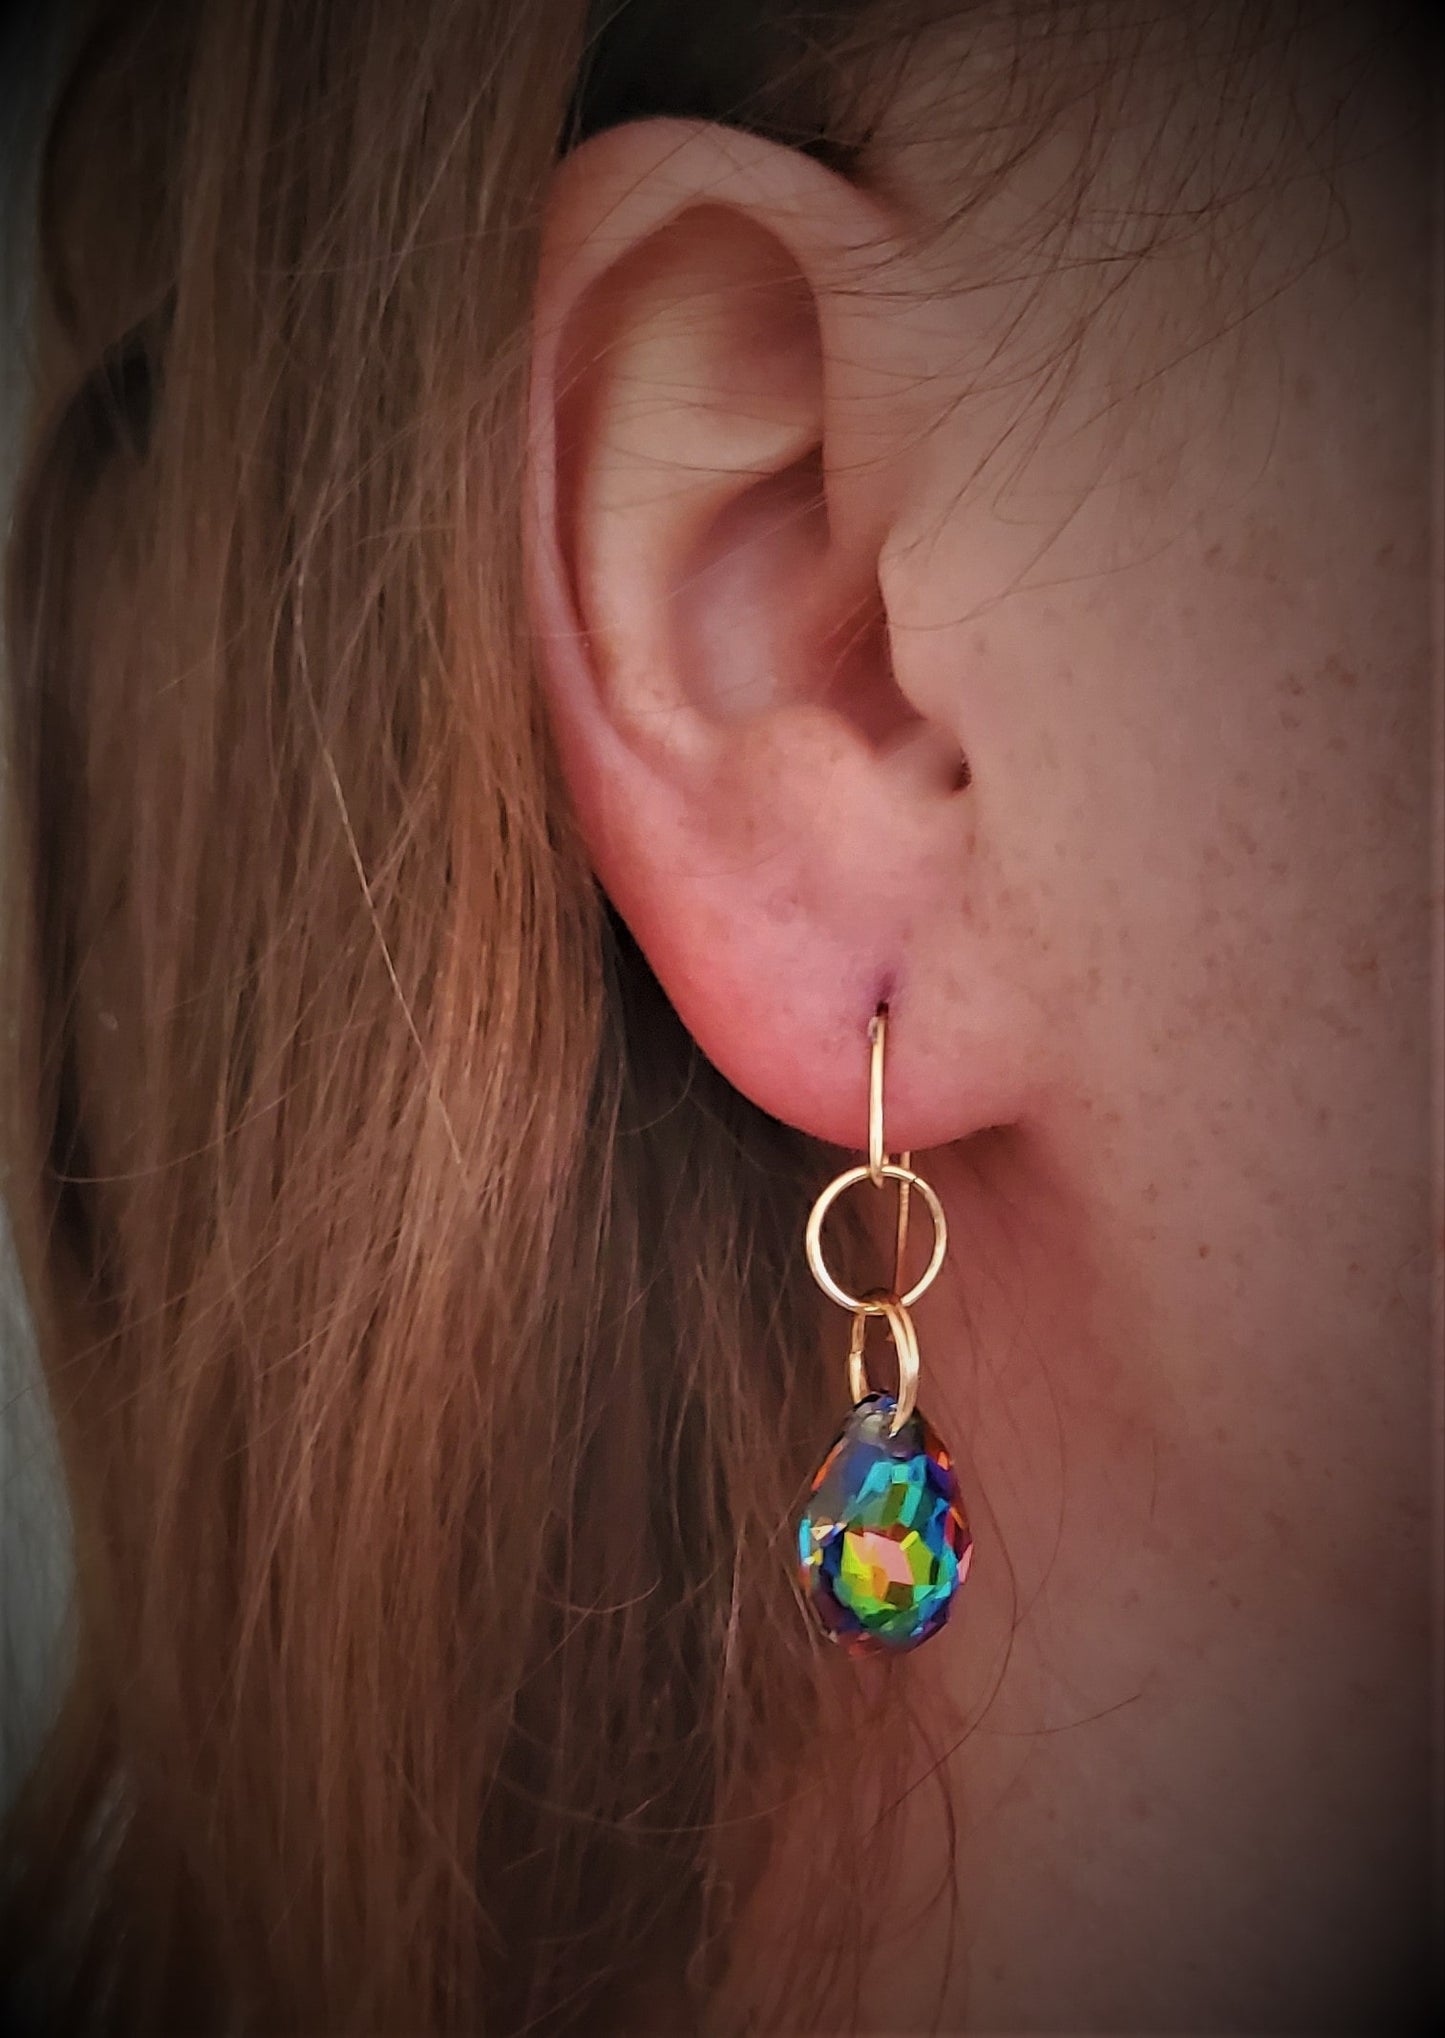 Red hair woman wearing handmade earrings, Splash Spice Dangle Earrings, earrings for women, Swarovski Crystal earrings